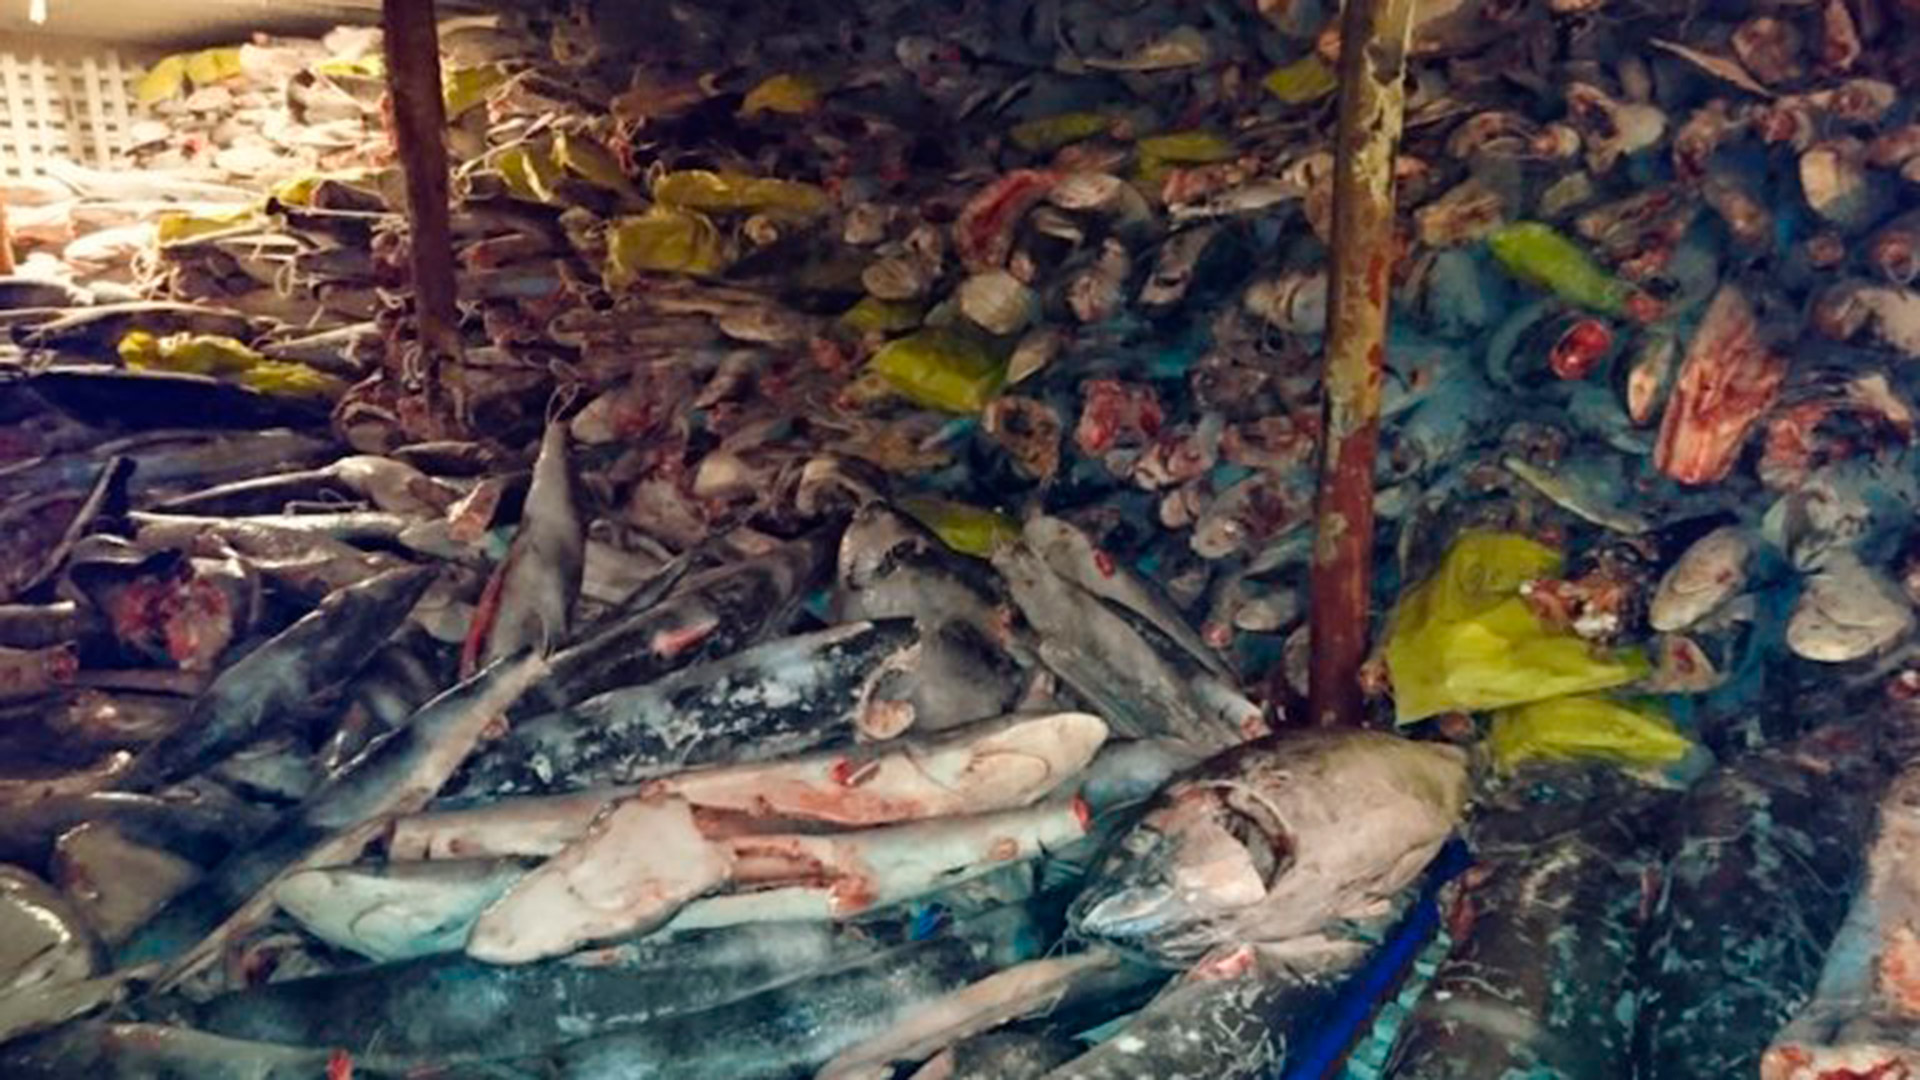 Autoridades informaron que en frigoríficos del Fu Yuan Yu Leng 999 se hallaron especies protegidas, como tiburón Martillo y tiburón Silky